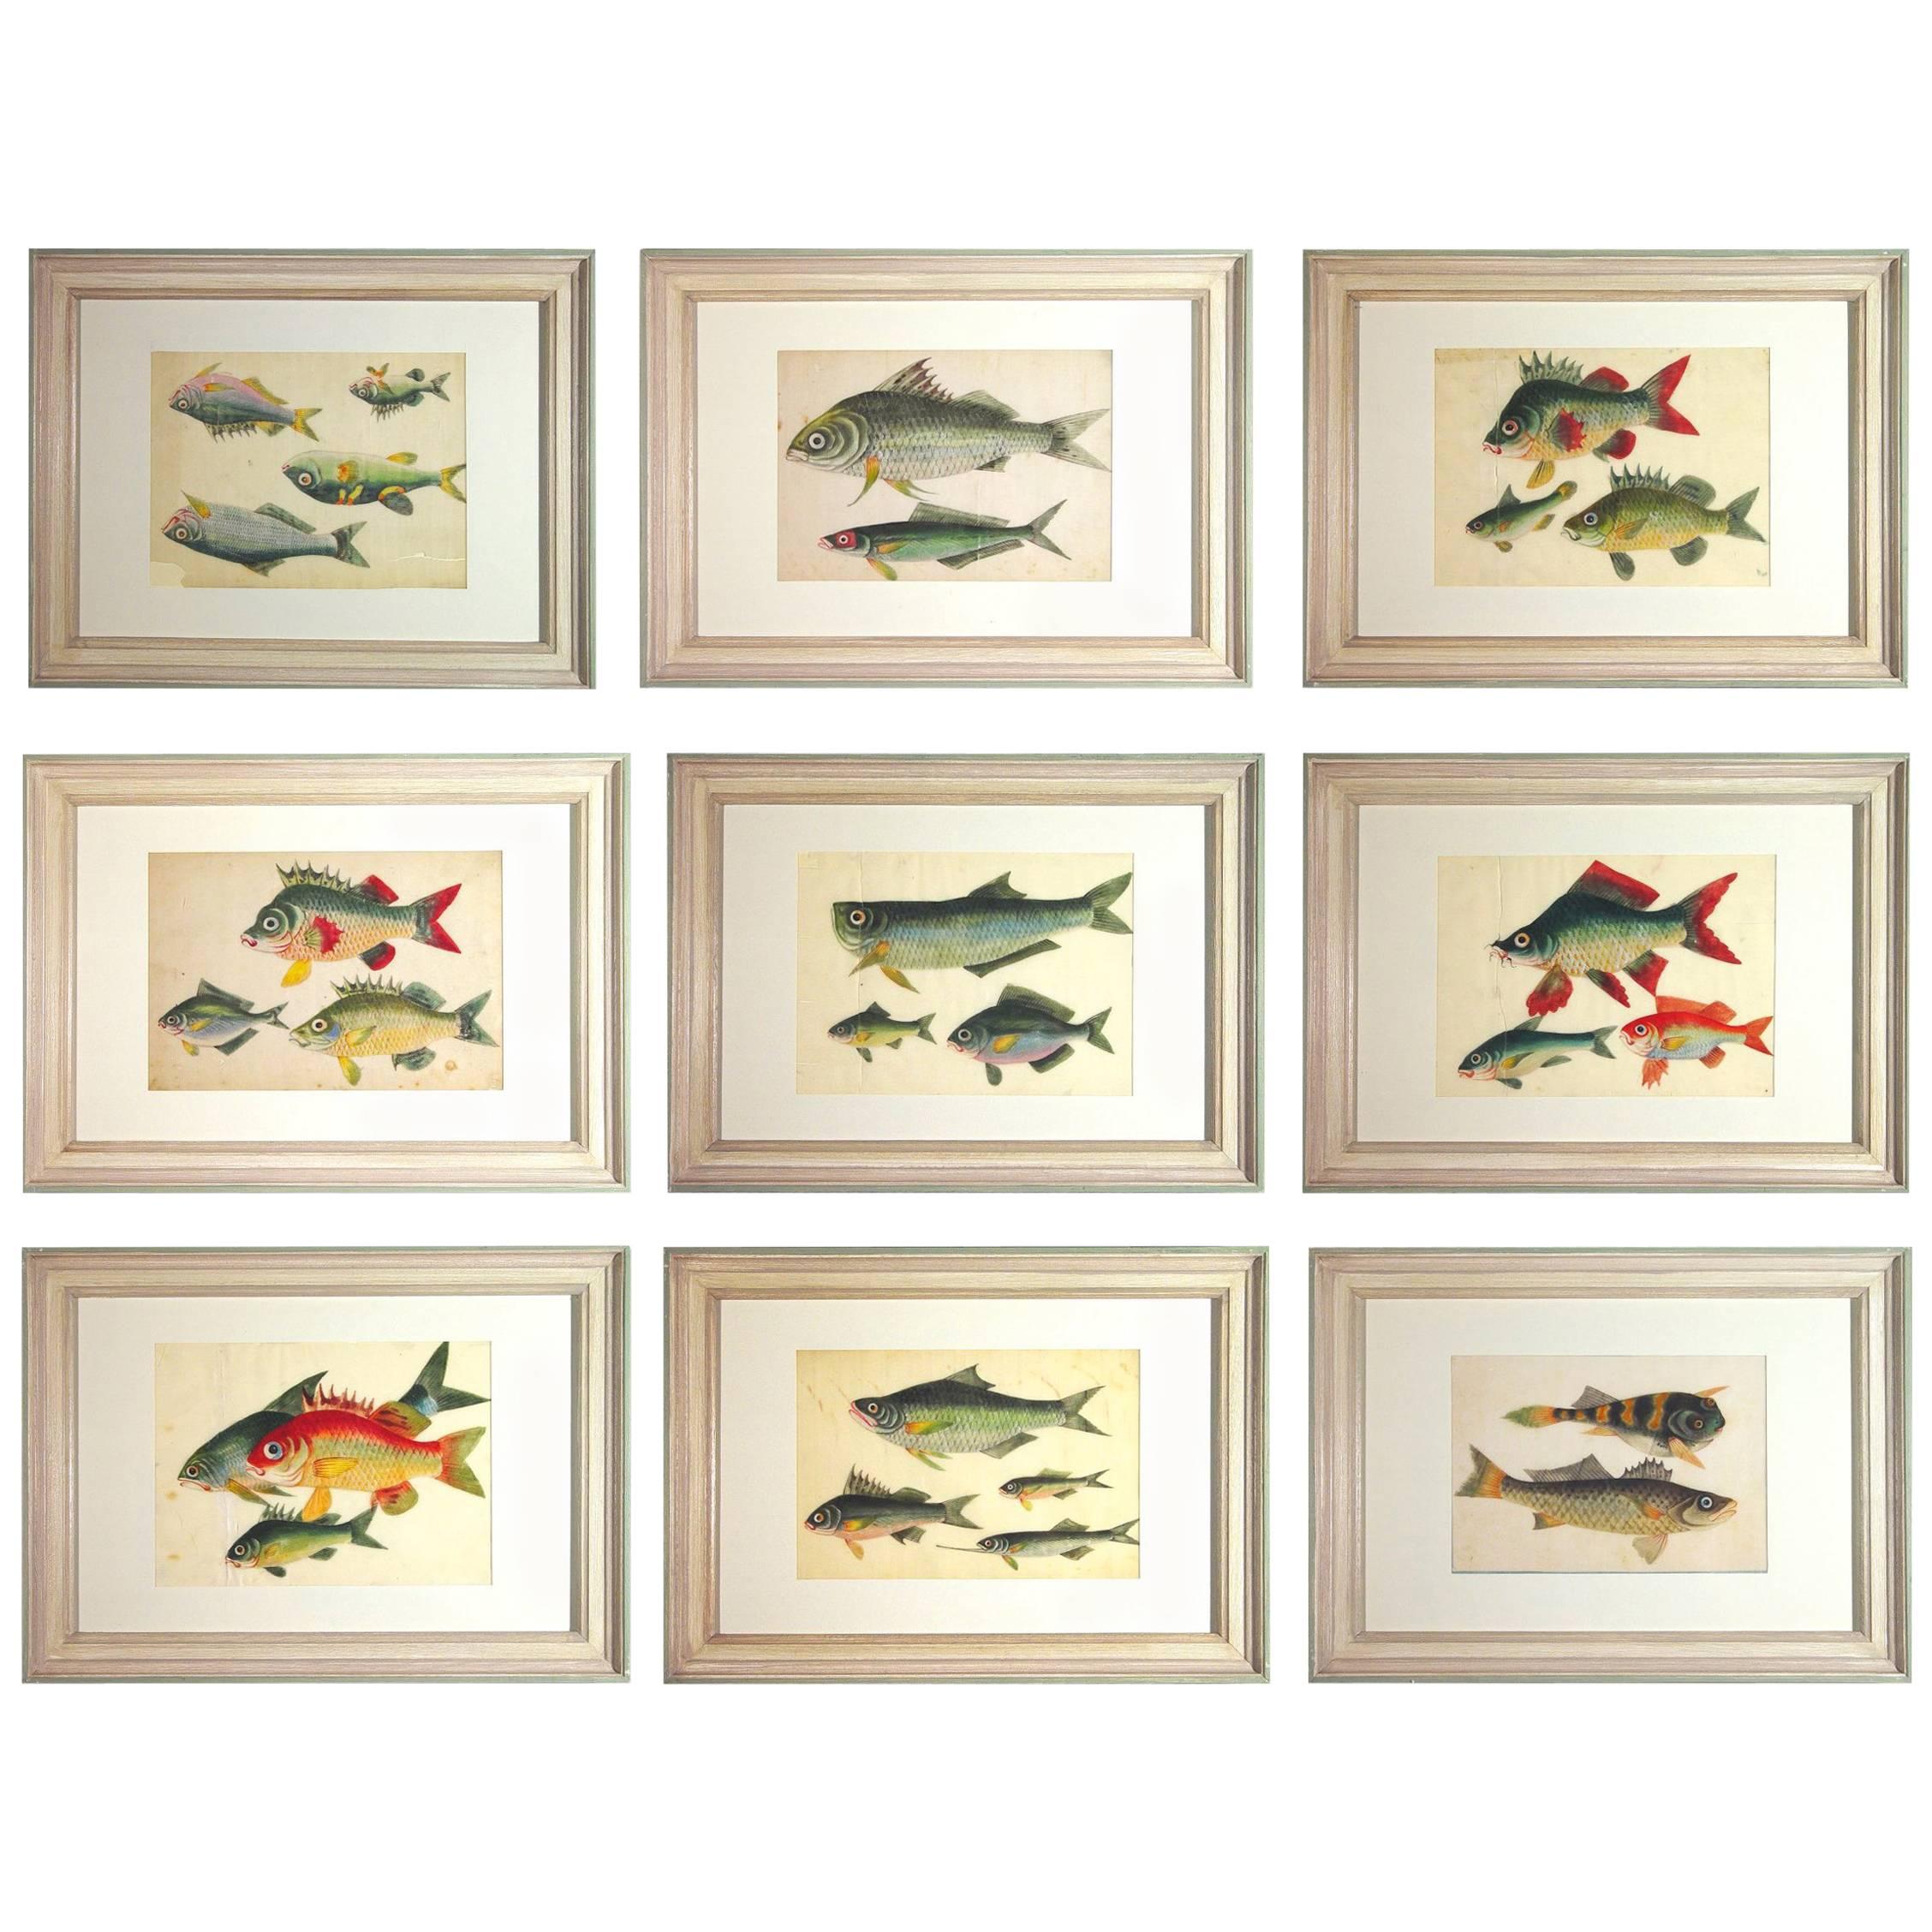 China Trade Watercolors of Fish on Pith Paper, circa 1850